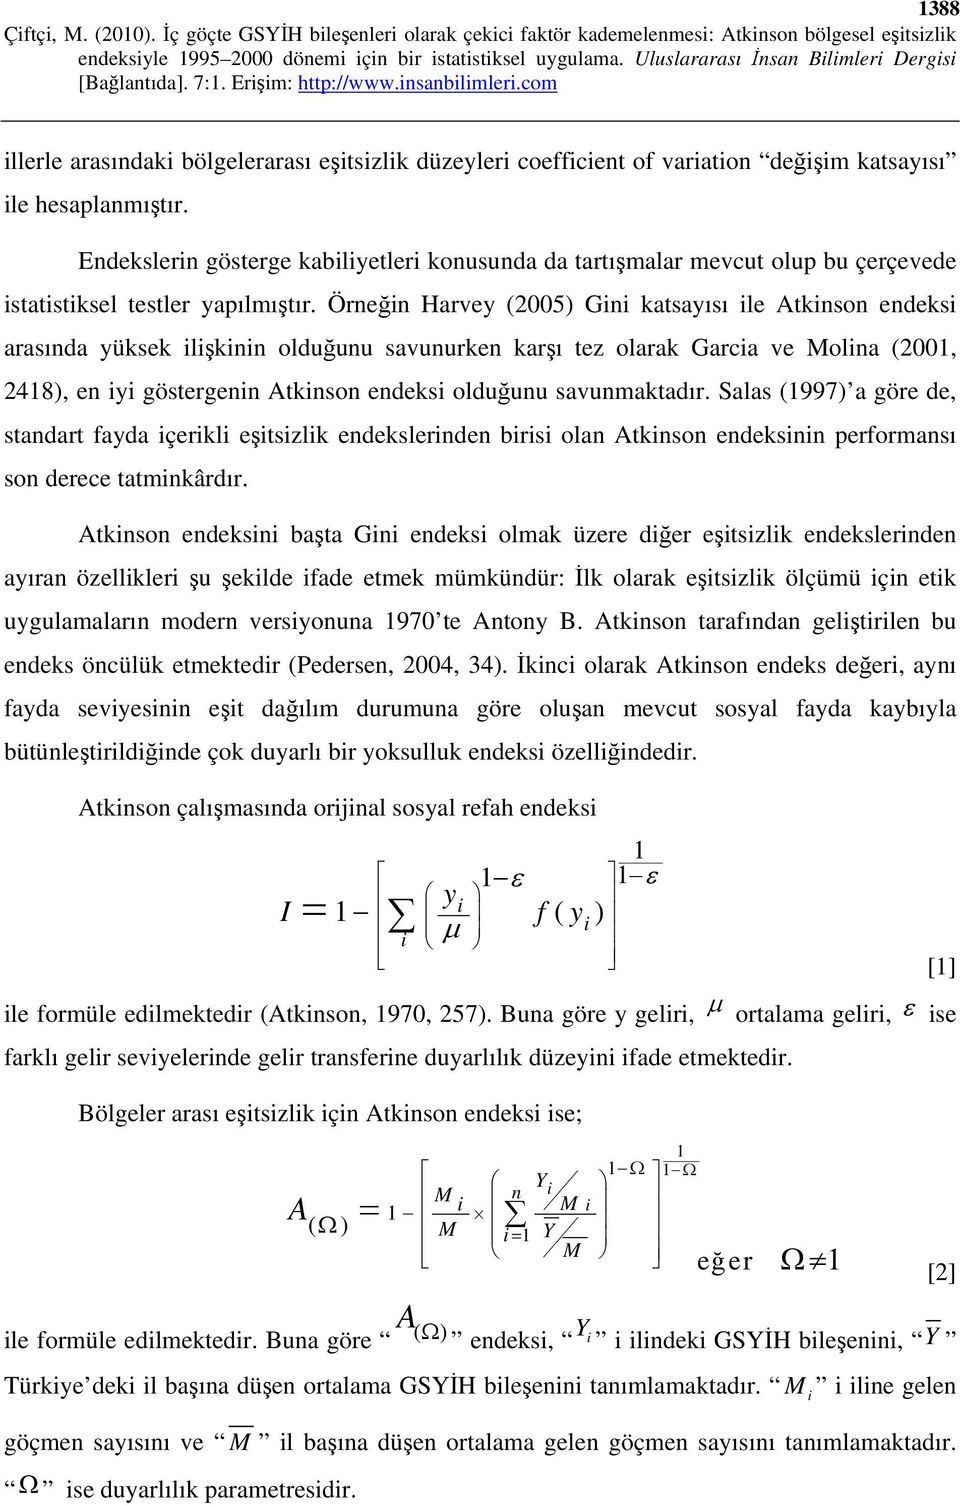 Örneğin Harvey (2005) Gini katsayısı ile Atkinson endeksi arasında yüksek ilişkinin olduğunu savunurken karşı tez olarak Garcia ve Molina (2001, 2418), en iyi göstergenin Atkinson endeksi olduğunu